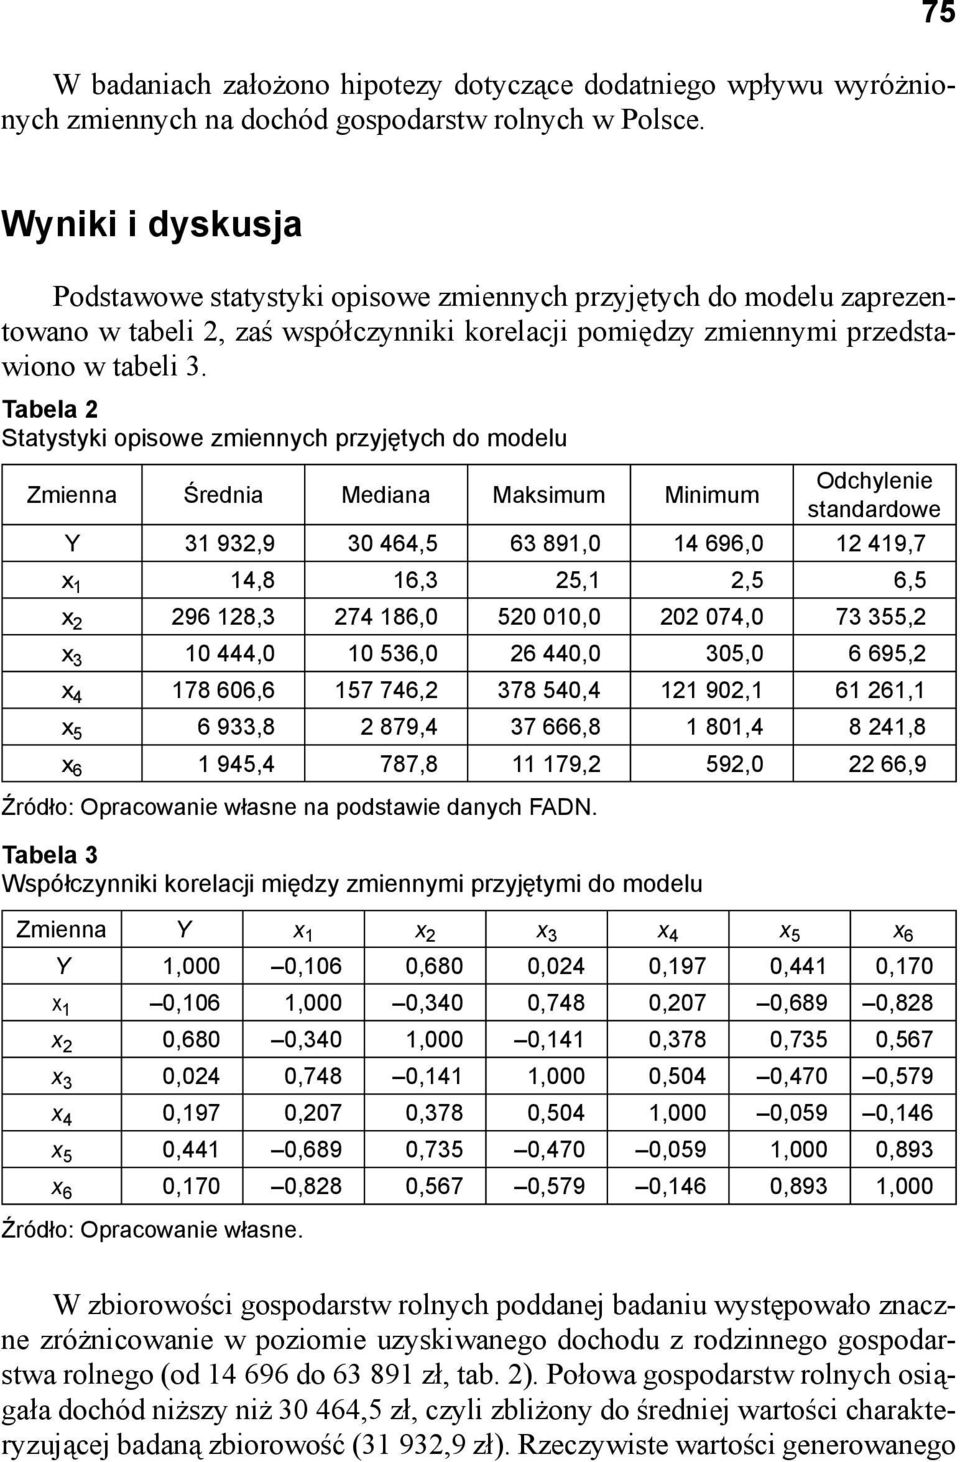 Tabela 2 Statystyki opisowe zmiennych przyjętych do modelu Zmienna Średnia Mediana Maksimum Minimum Odchylenie standardowe Y 31 932,9 30 464,5 63 891,0 14 696,0 12 419,7 x 1 14,8 16,3 25,1 2,5 6,5 x